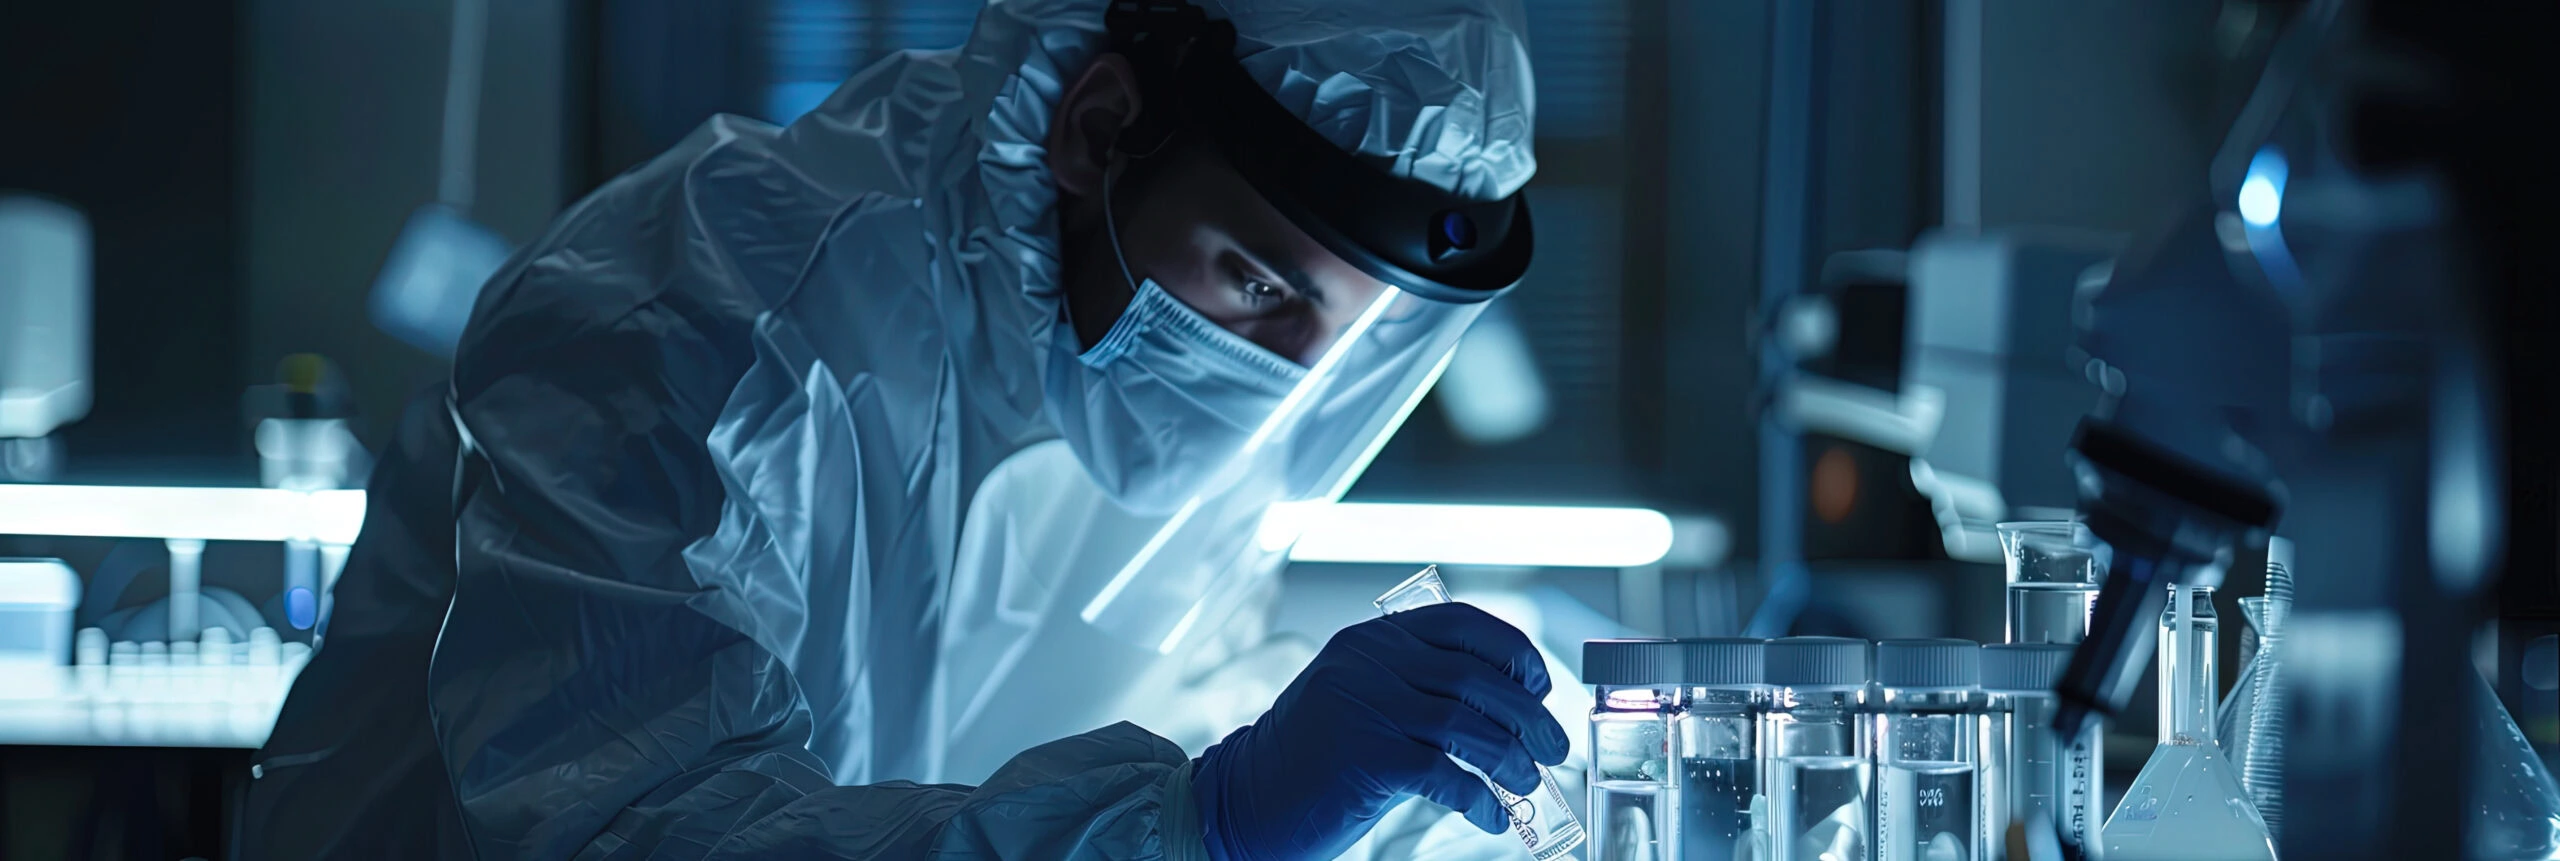 Scientist conducting lab test